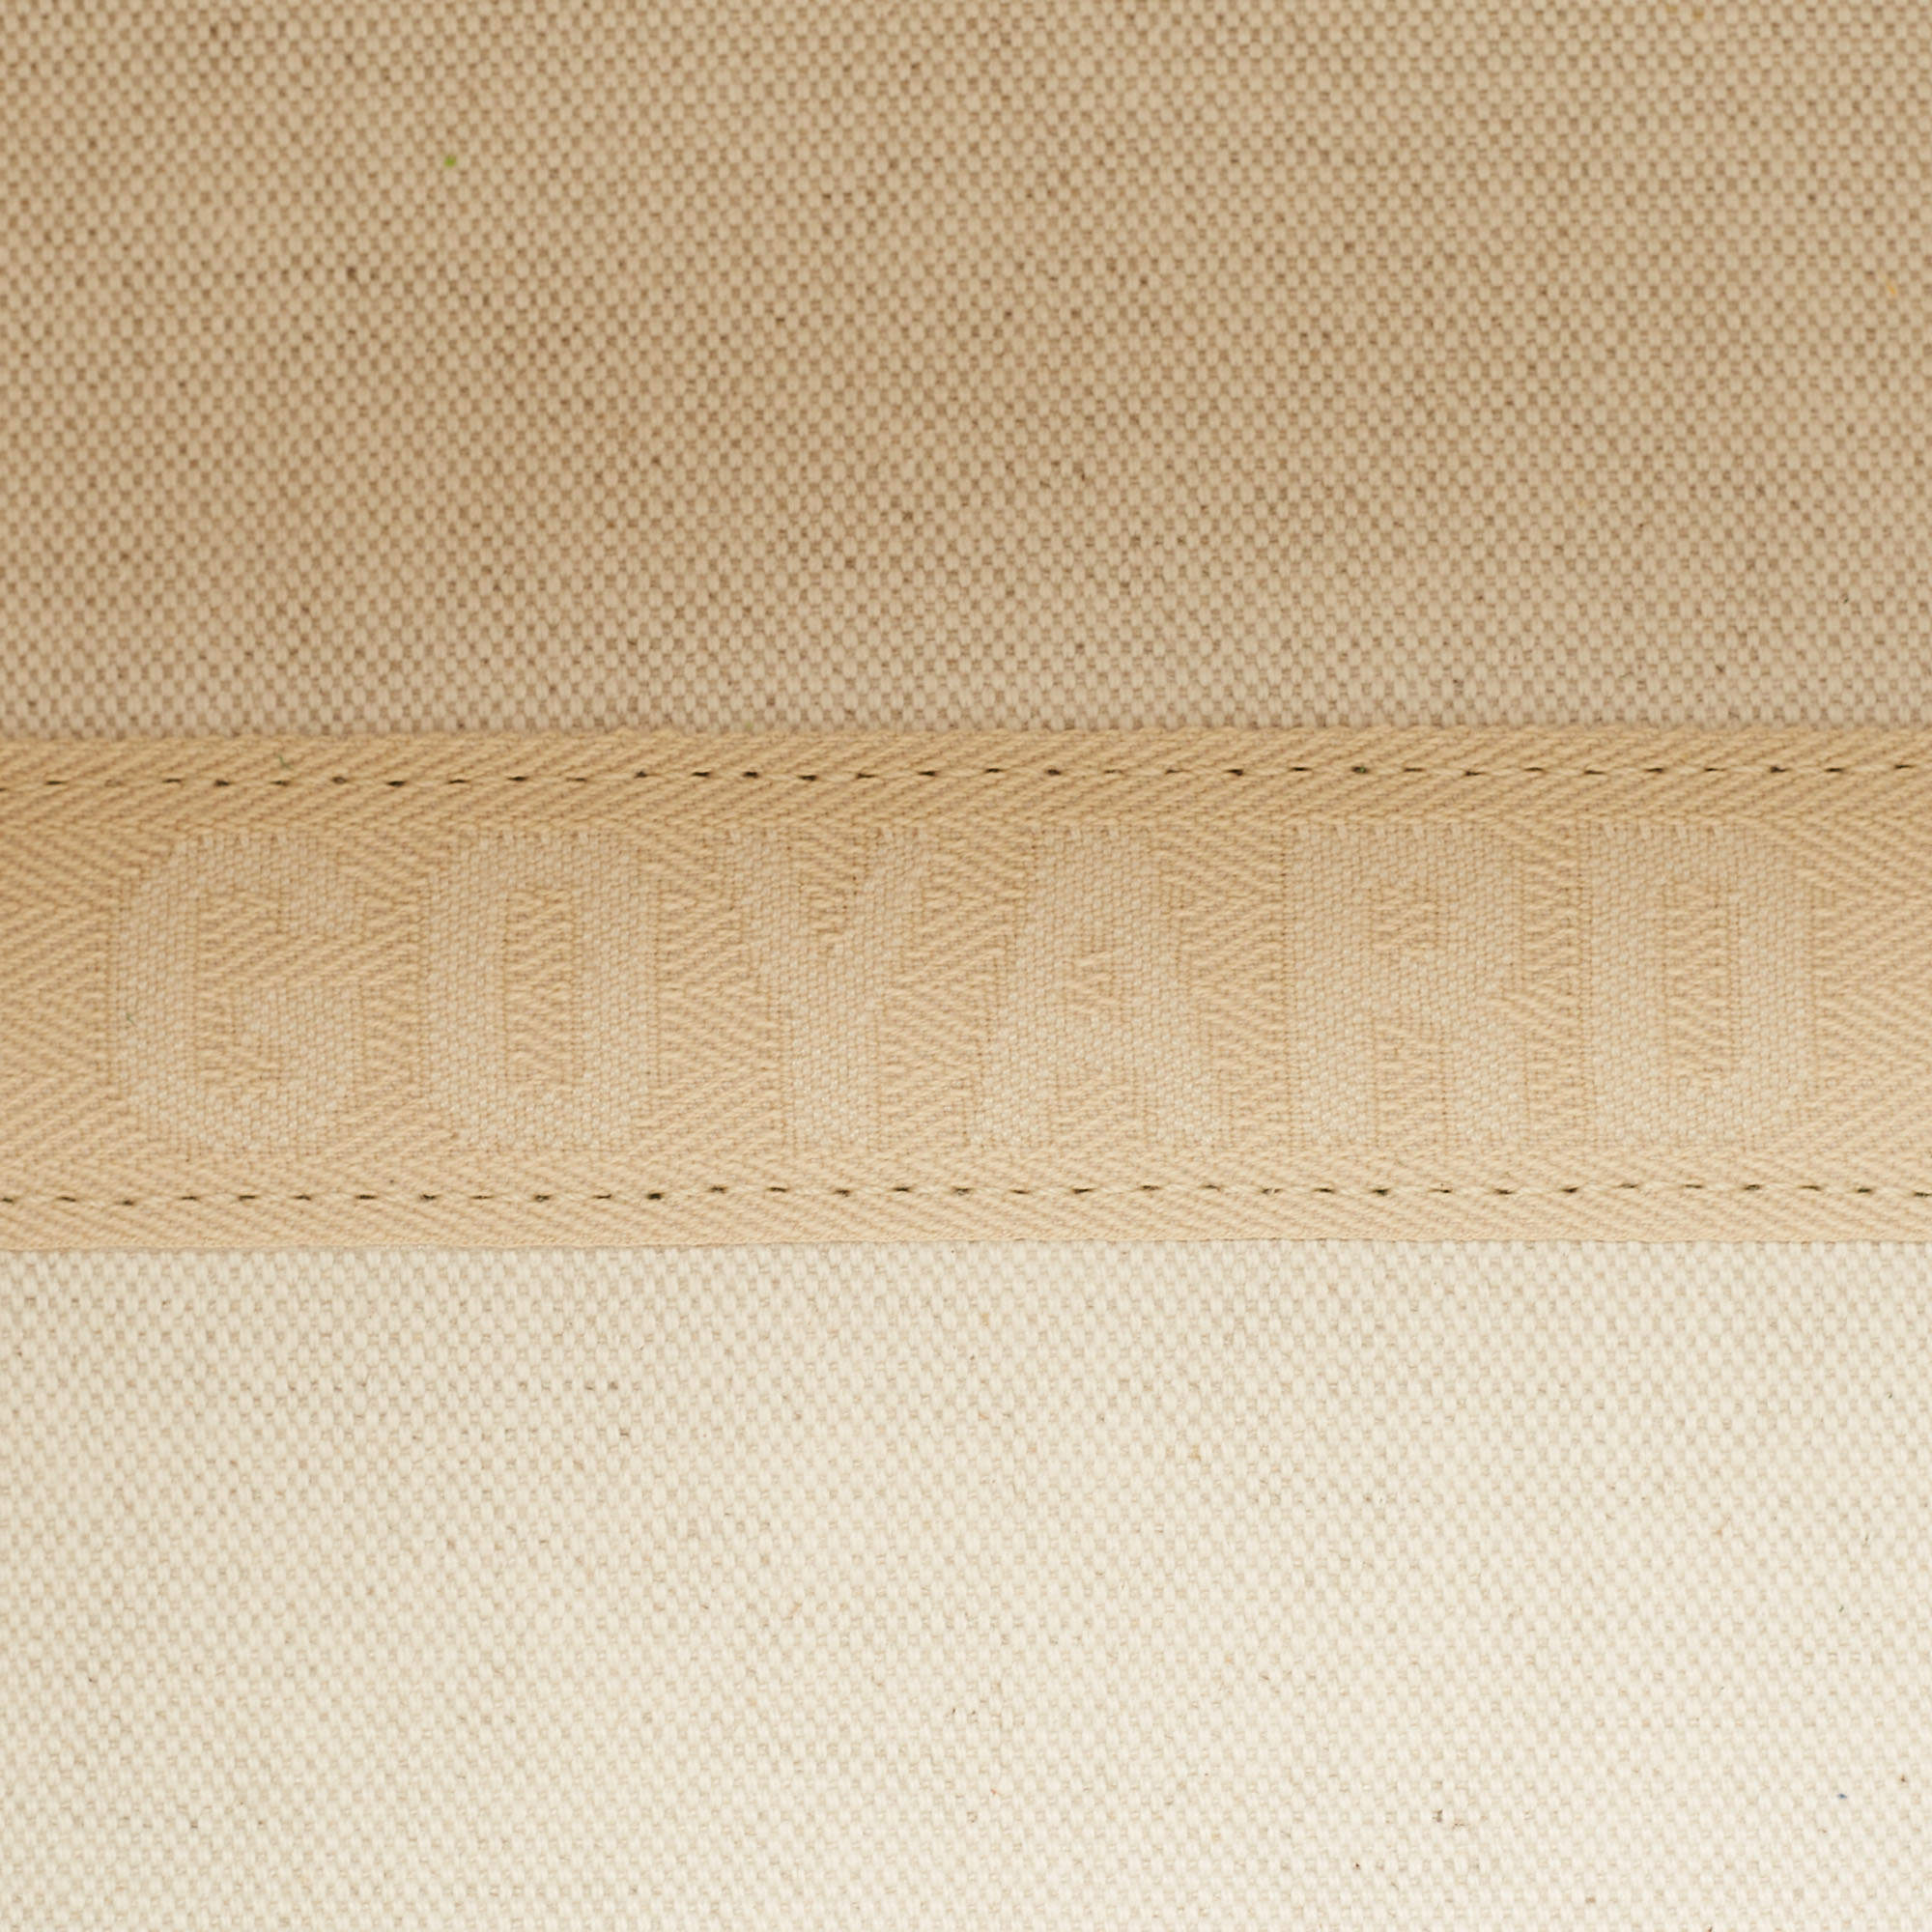 Goyard Villette - For Sale on 1stDibs  goyard villette tote bag mm price, villette  goyard, goyard vilette